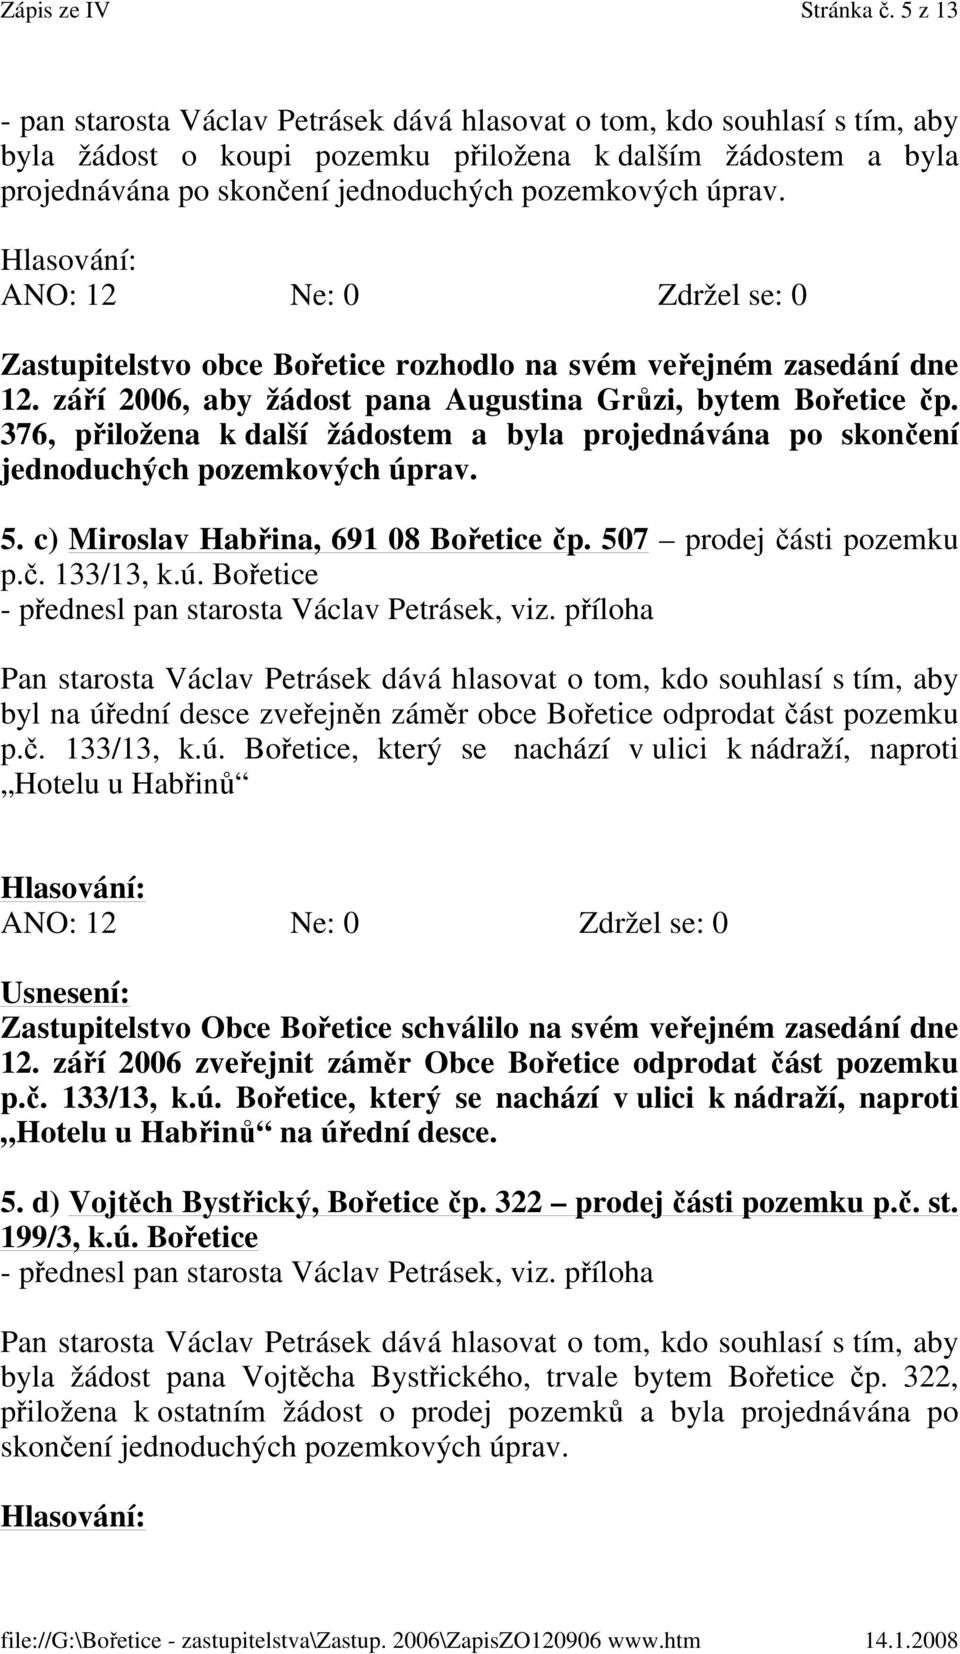 úprav. Zastupitelstvo obce Bořetice rozhodlo na svém veřejném zasedání dne 12. září 2006, aby žádost pana Augustina Grůzi, bytem Bořetice čp.